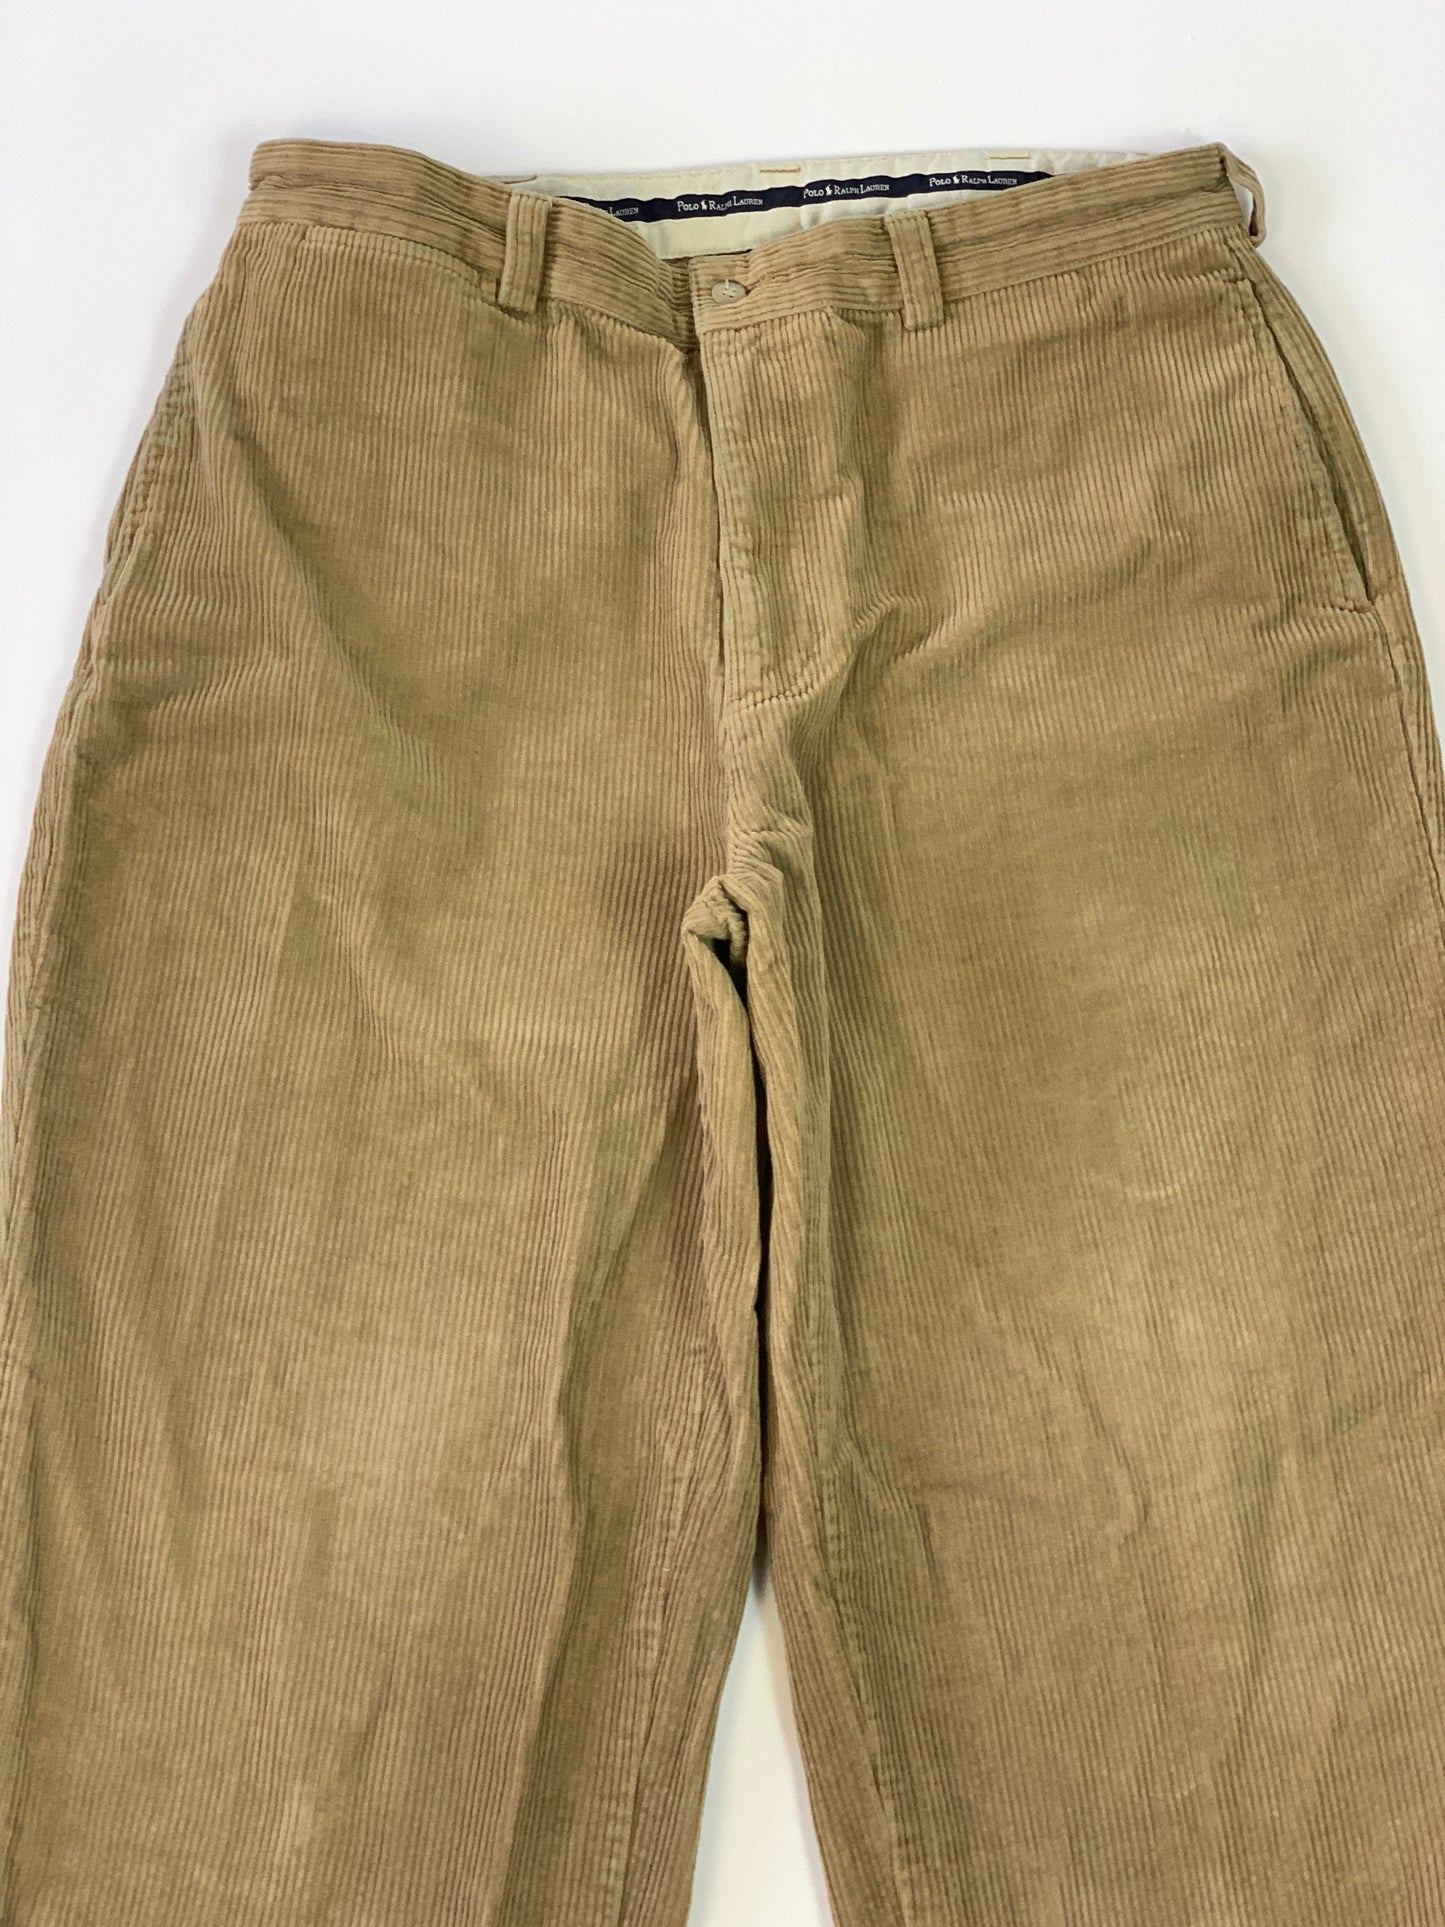 Ralph Lauren Vintage Corduroy Pants - 34